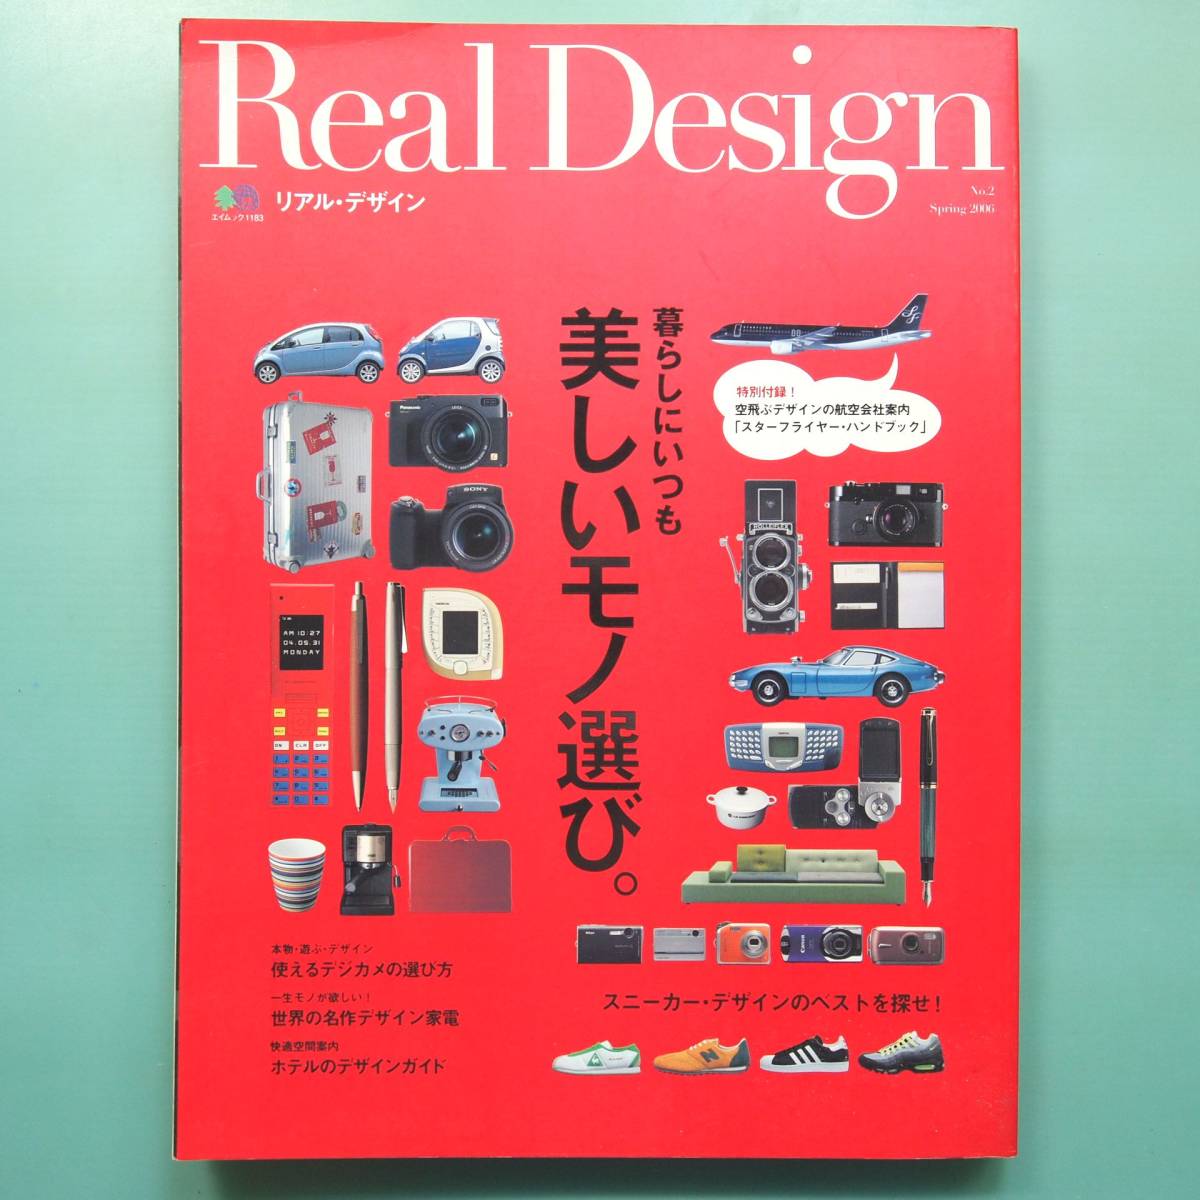 【Real Design No.2 2006年】暮らしにいつも美しいモノ選び。/管理番号H-0111_画像1